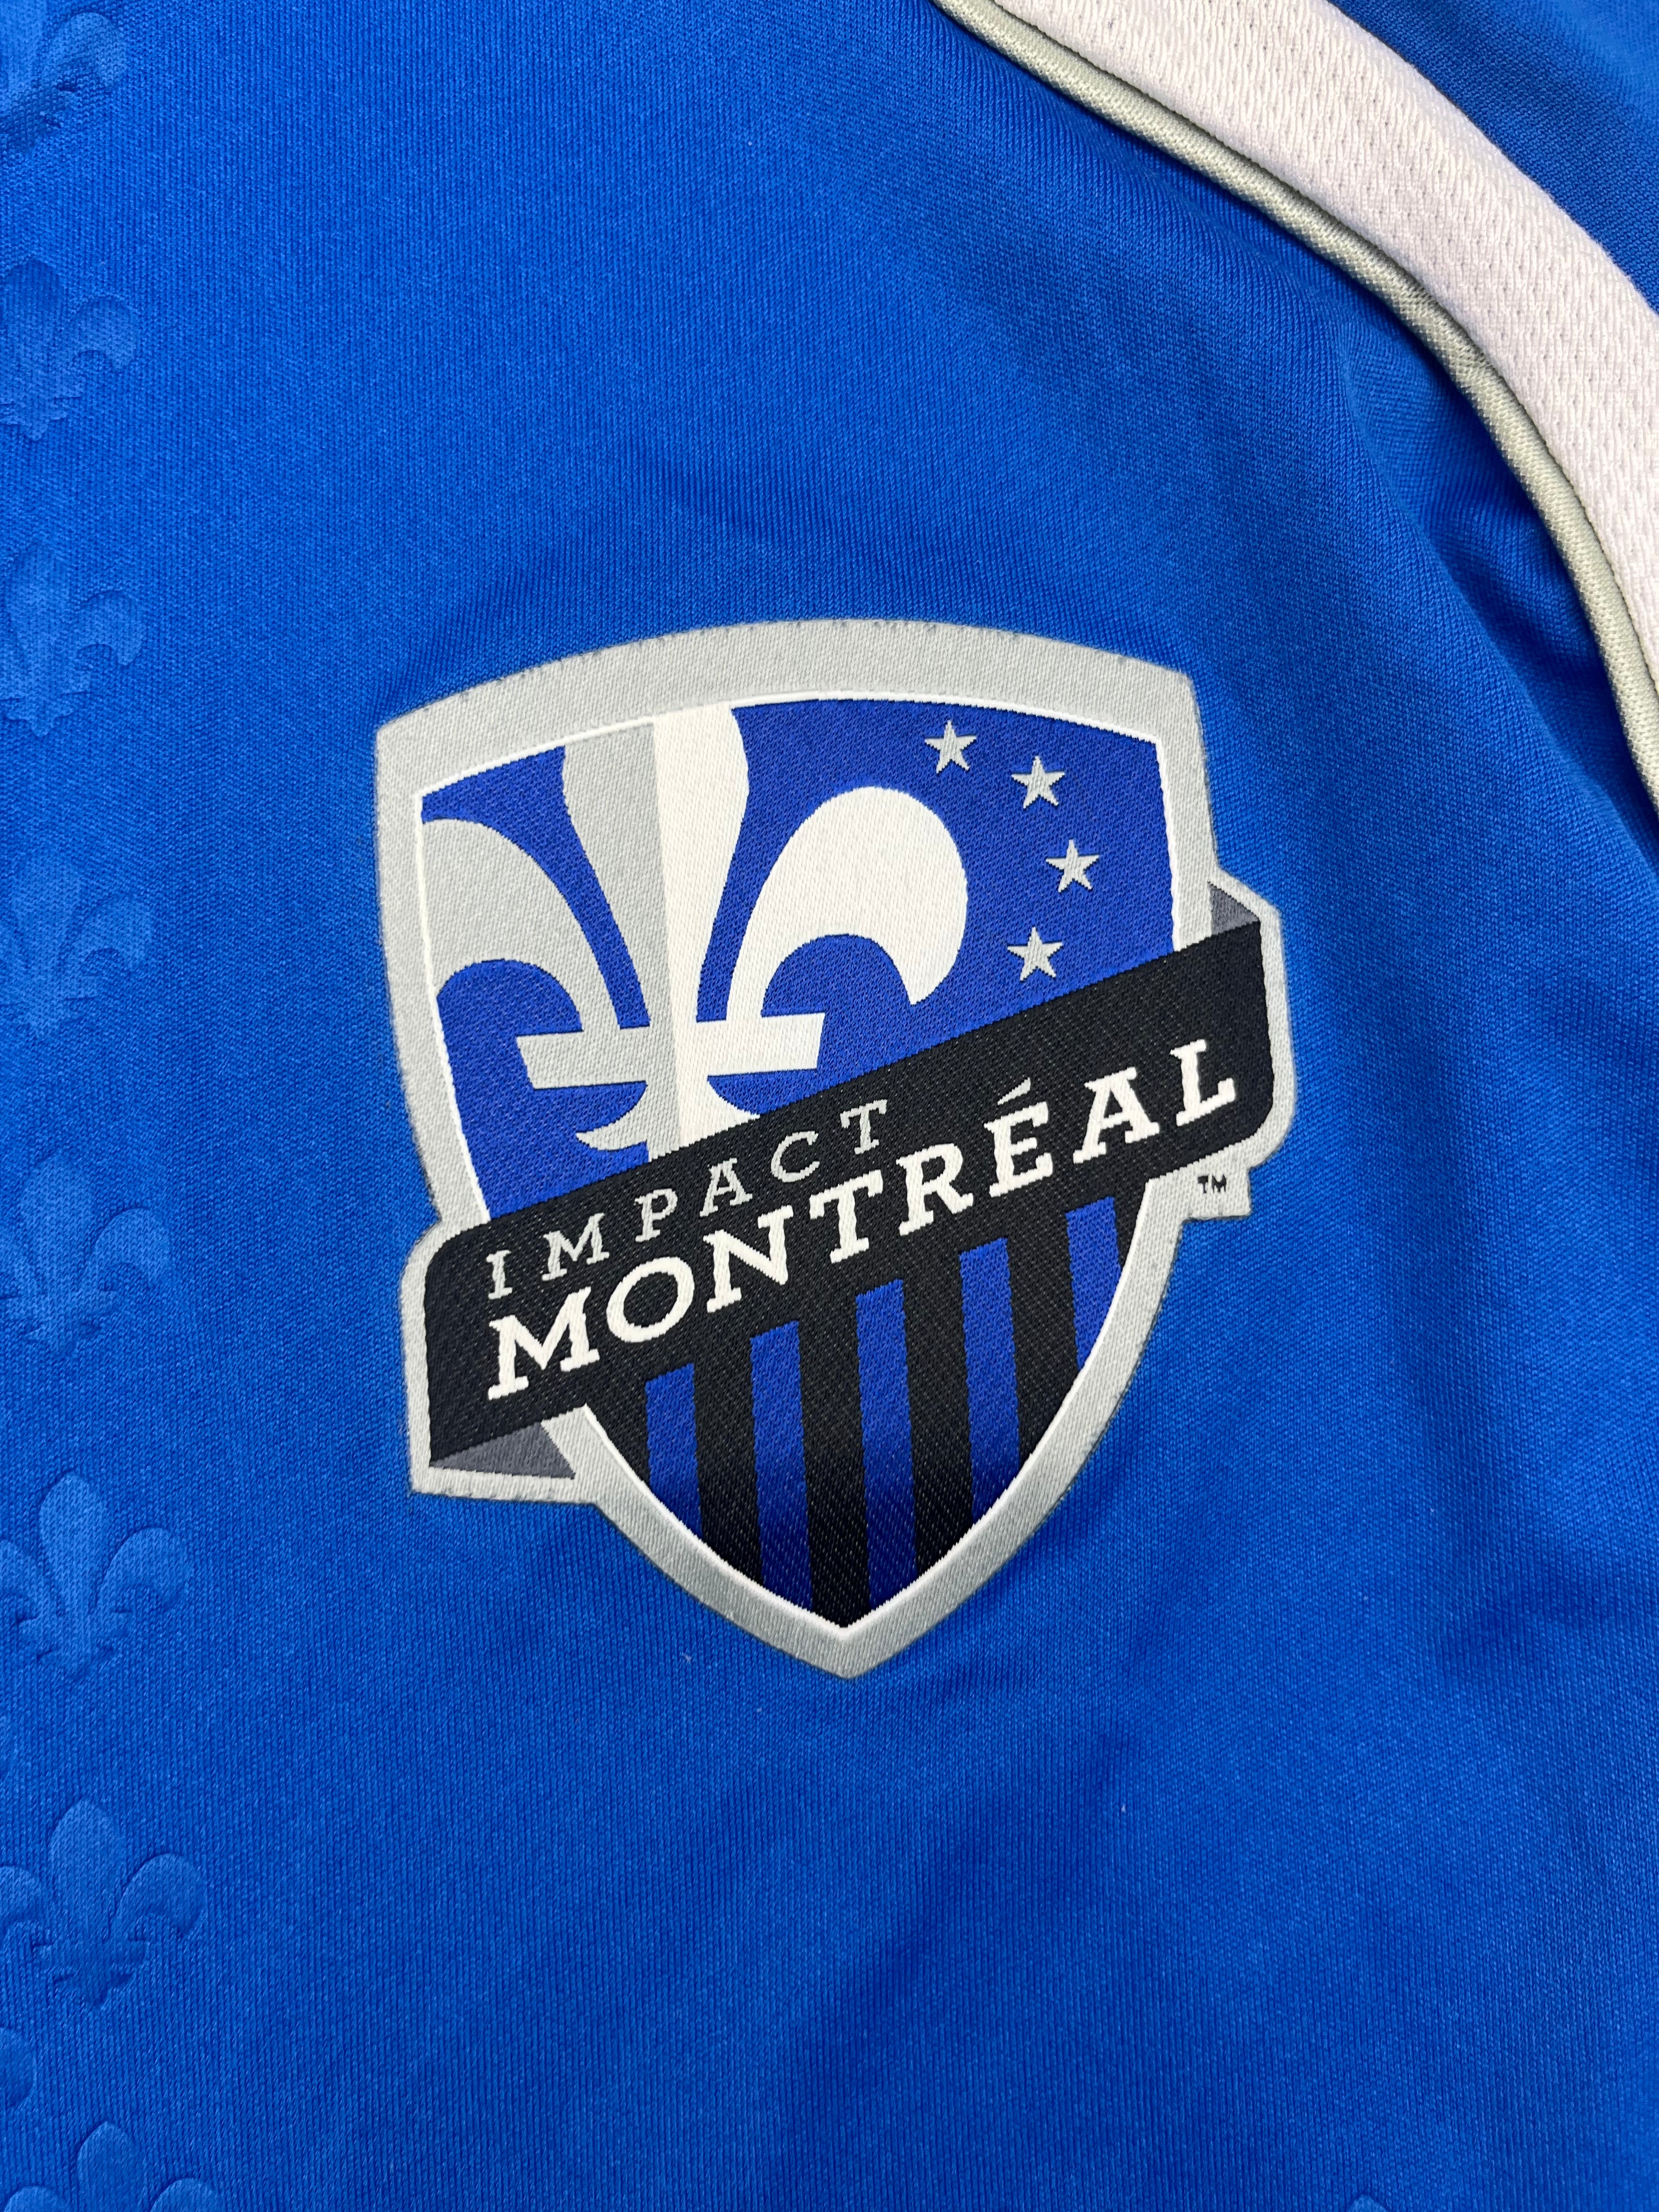 Impact de Montréal 2012 *Spécifications du joueur* Maillot L/S Domicile (XL) 9/10